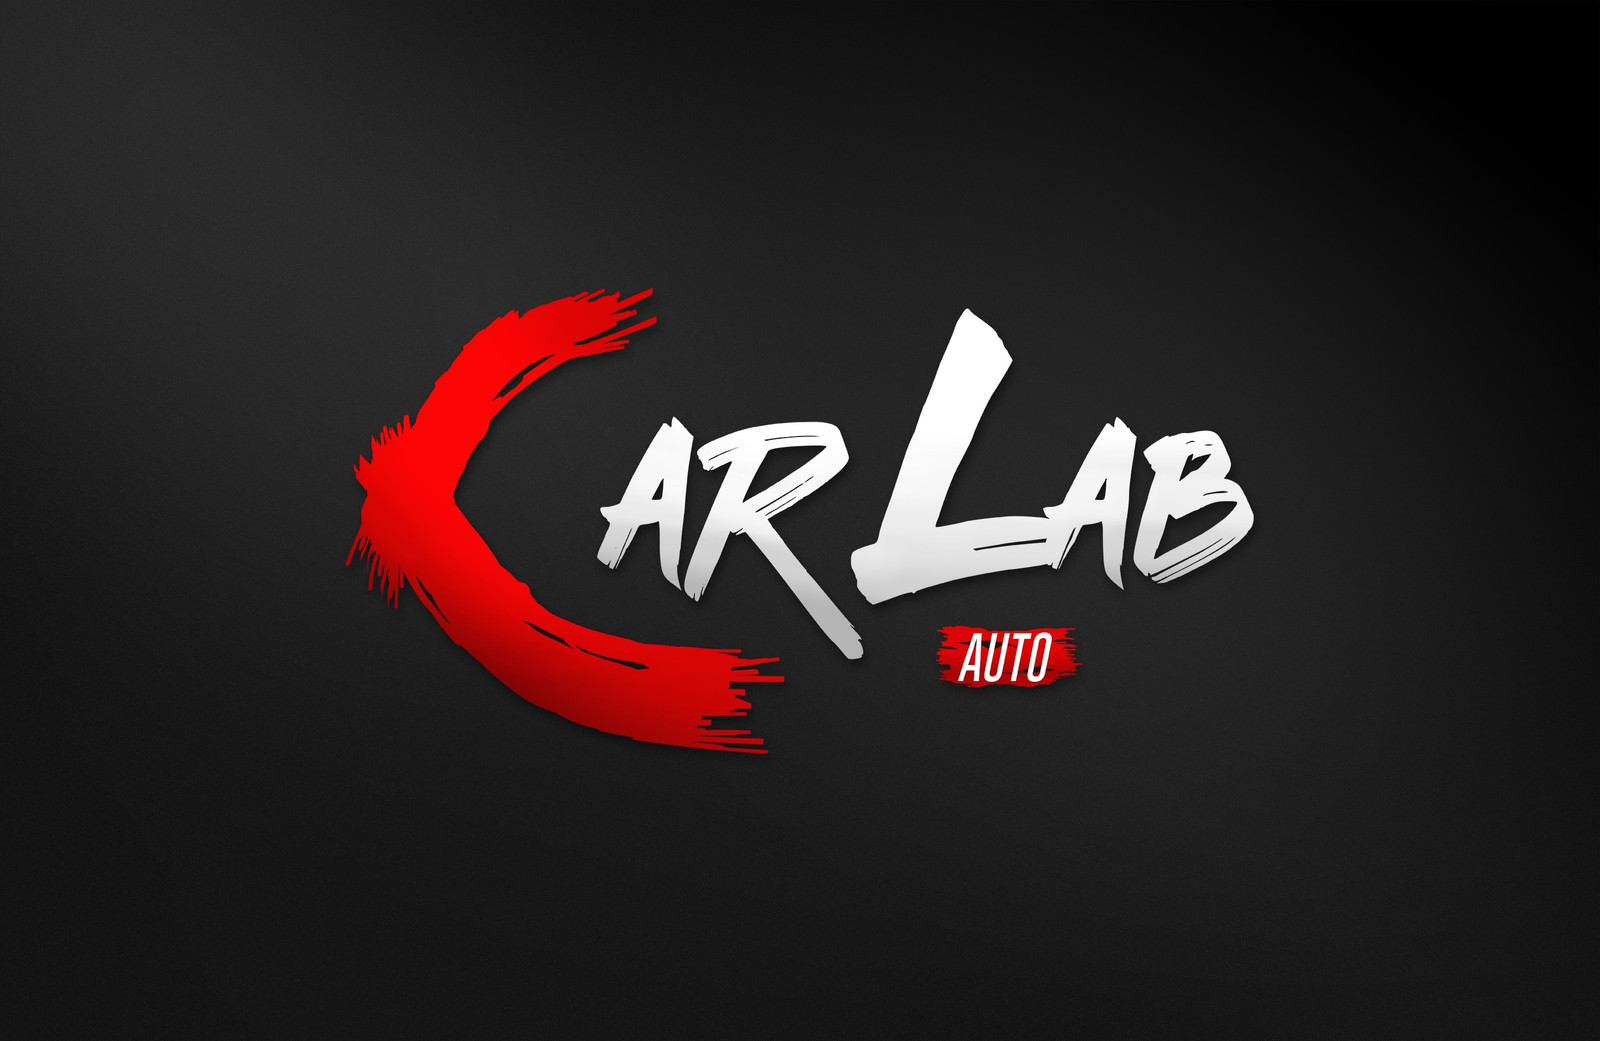 Car Lab Auto AS